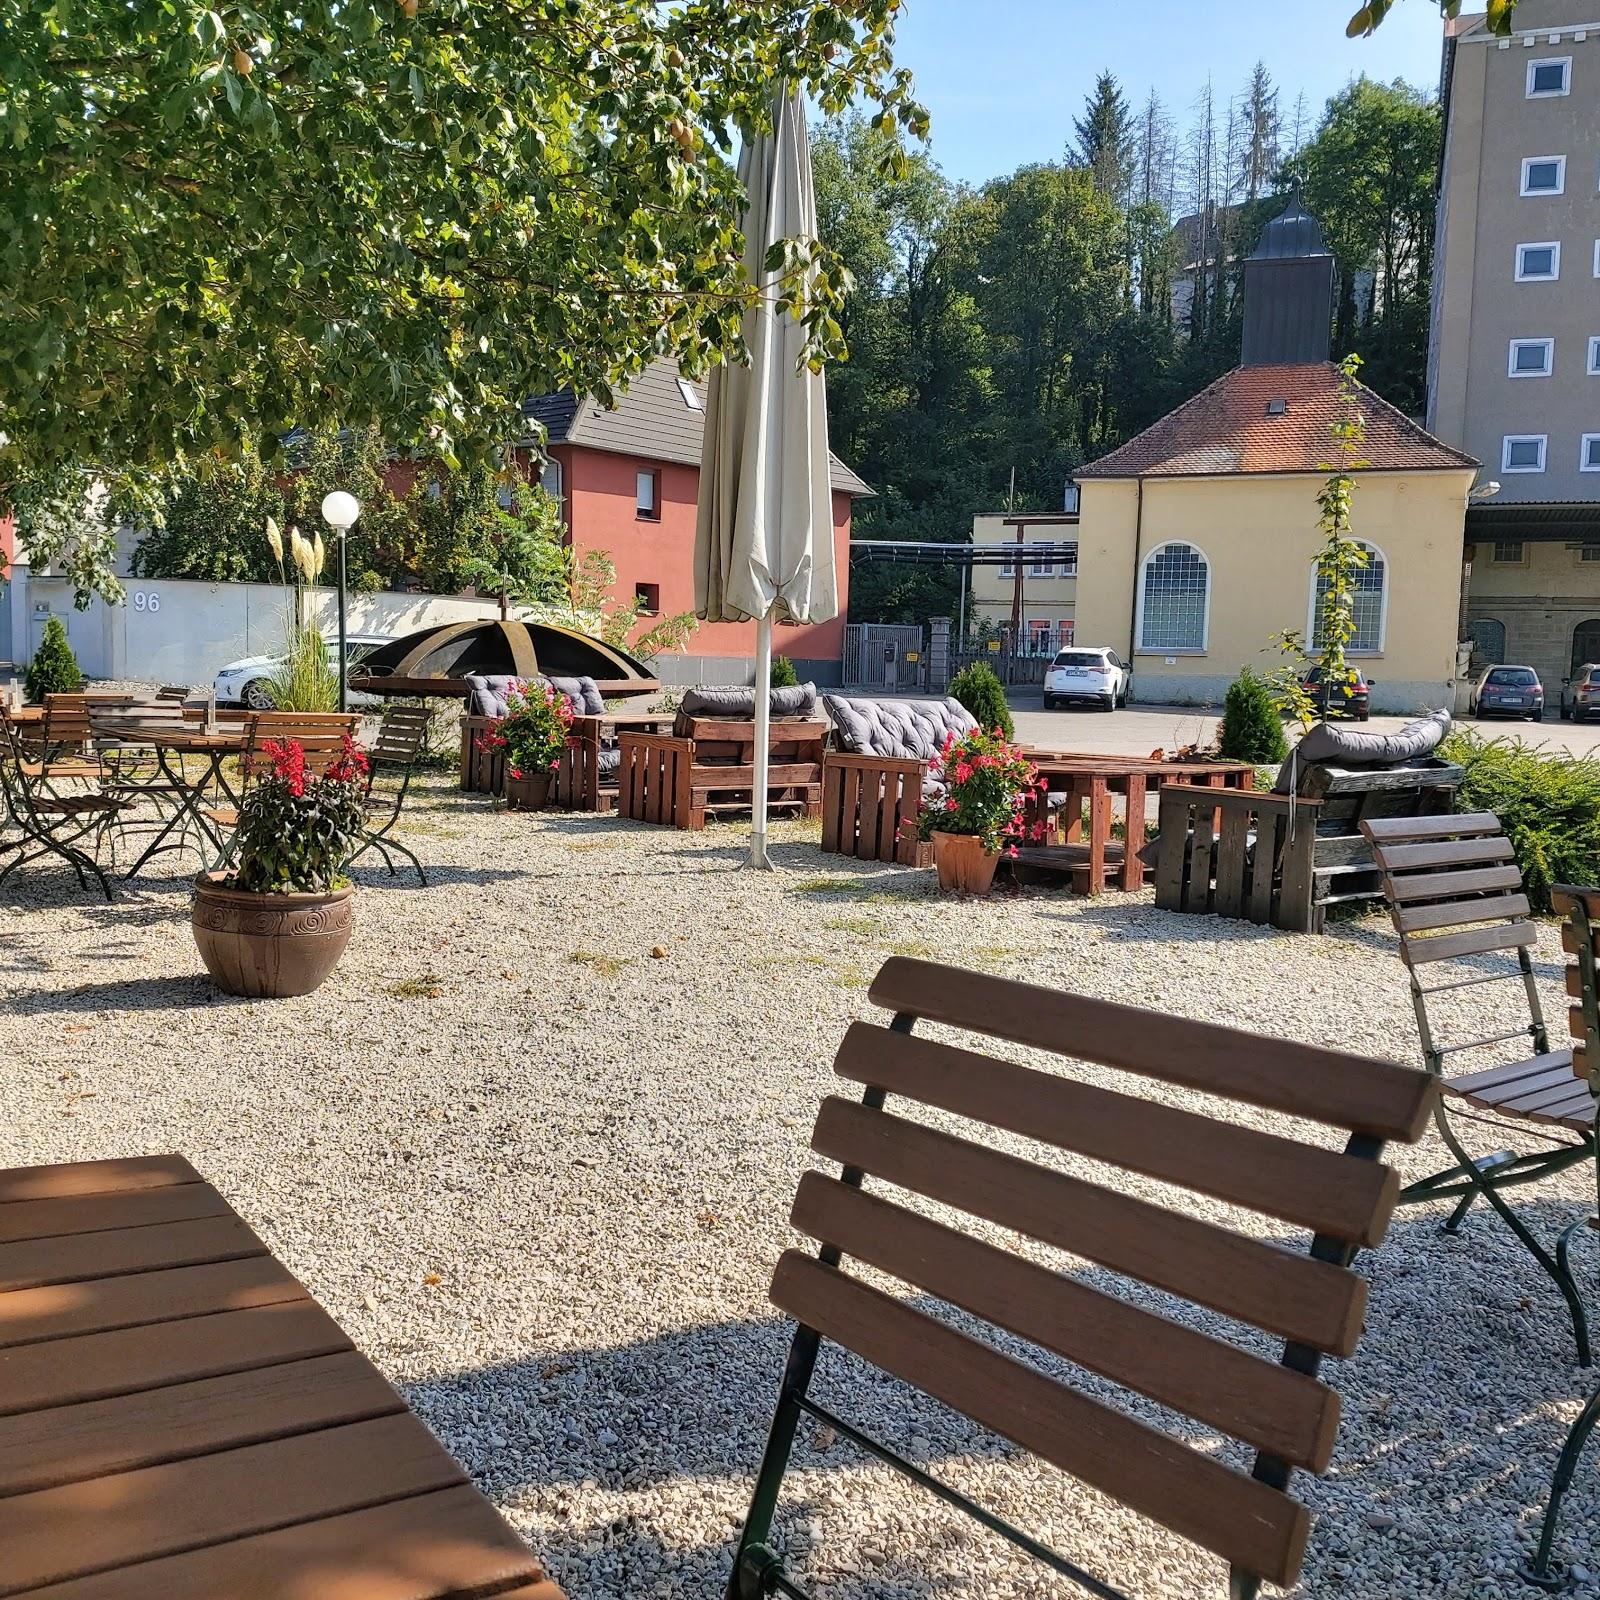 Restaurant "Biergarten bei der Klostermühle" in Reutlingen